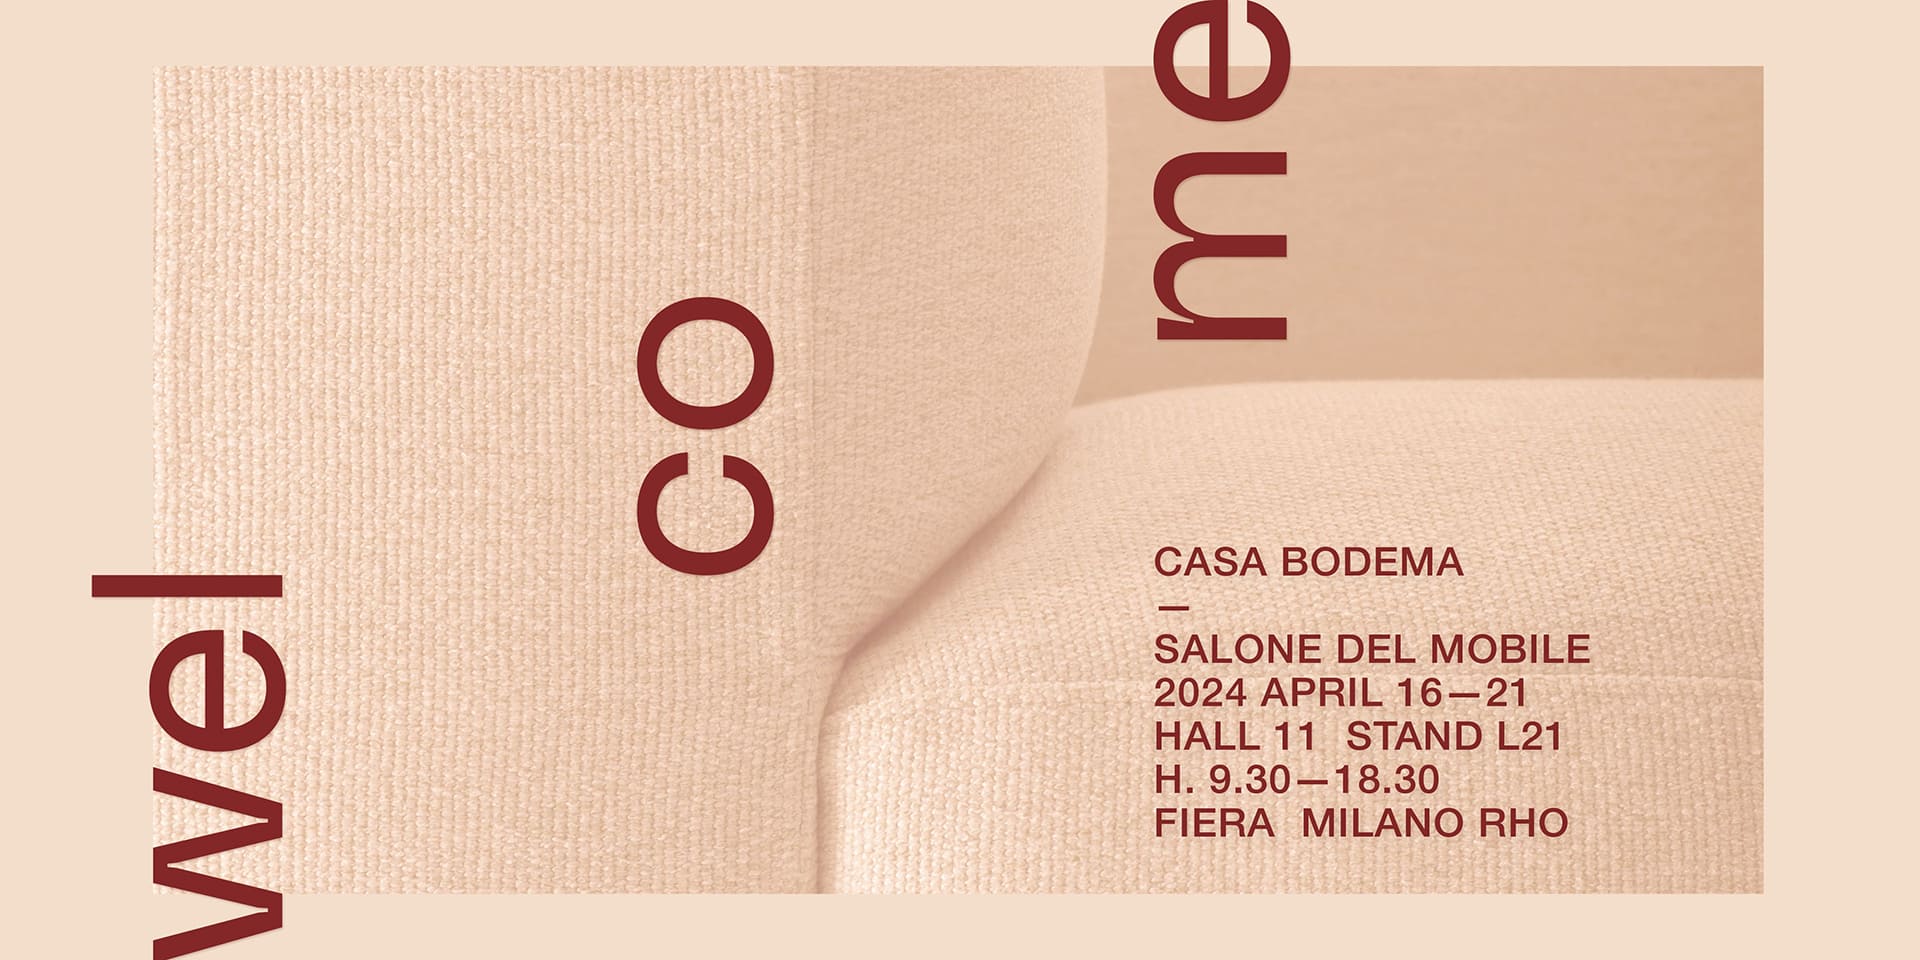 Locandina di Bodema al Salone del Mobile 2024, Milano